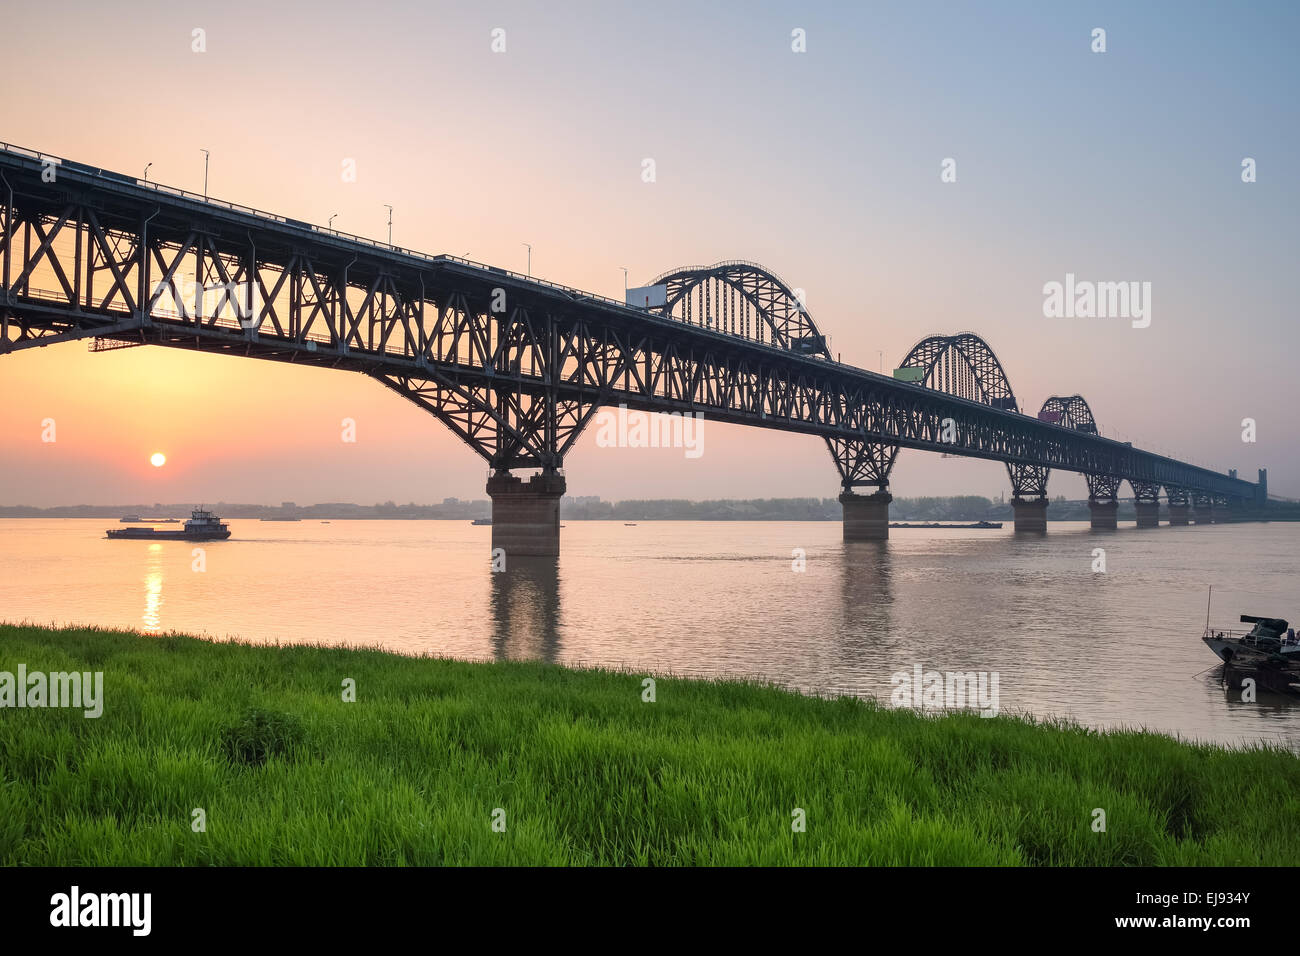 yangtze river bridge in sunset Stock Photo